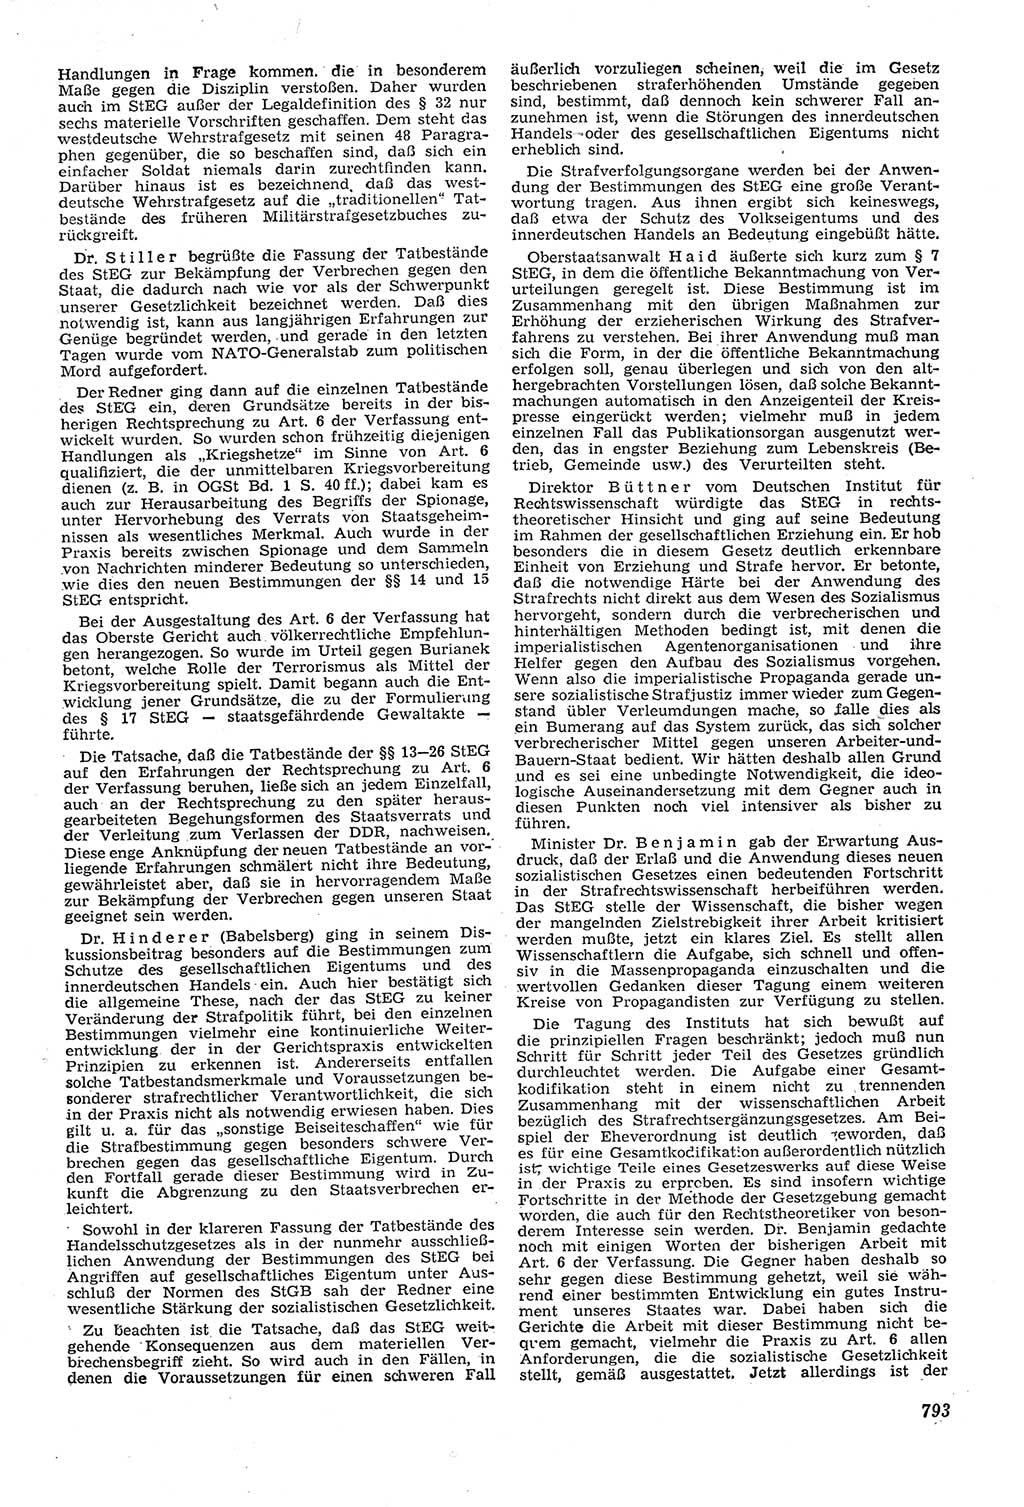 Neue Justiz (NJ), Zeitschrift für Recht und Rechtswissenschaft [Deutsche Demokratische Republik (DDR)], 11. Jahrgang 1957, Seite 793 (NJ DDR 1957, S. 793)